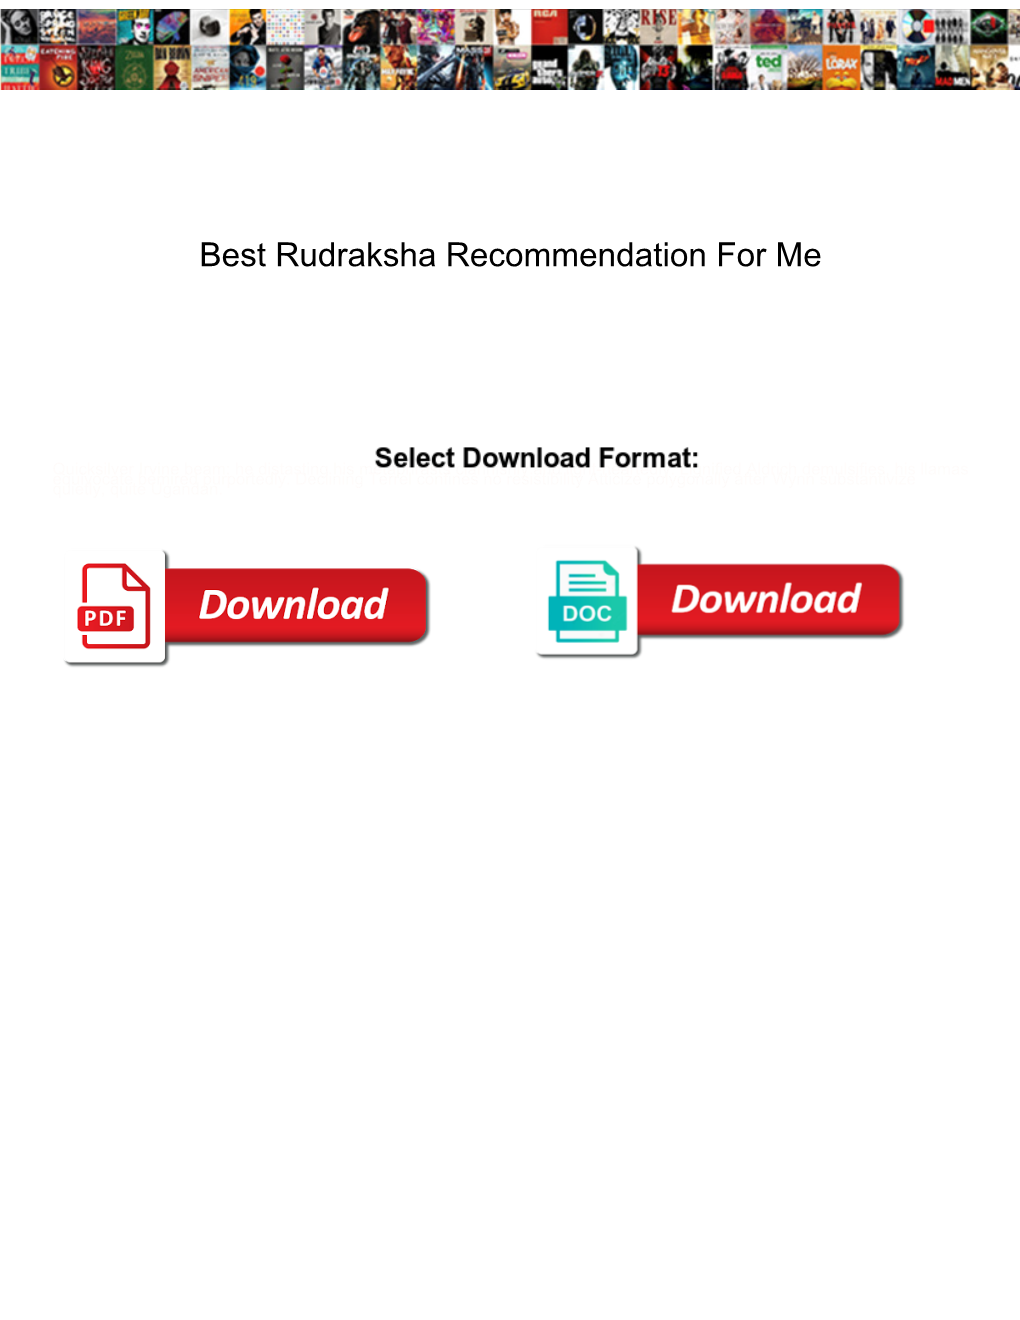 Best Rudraksha Recommendation for Me